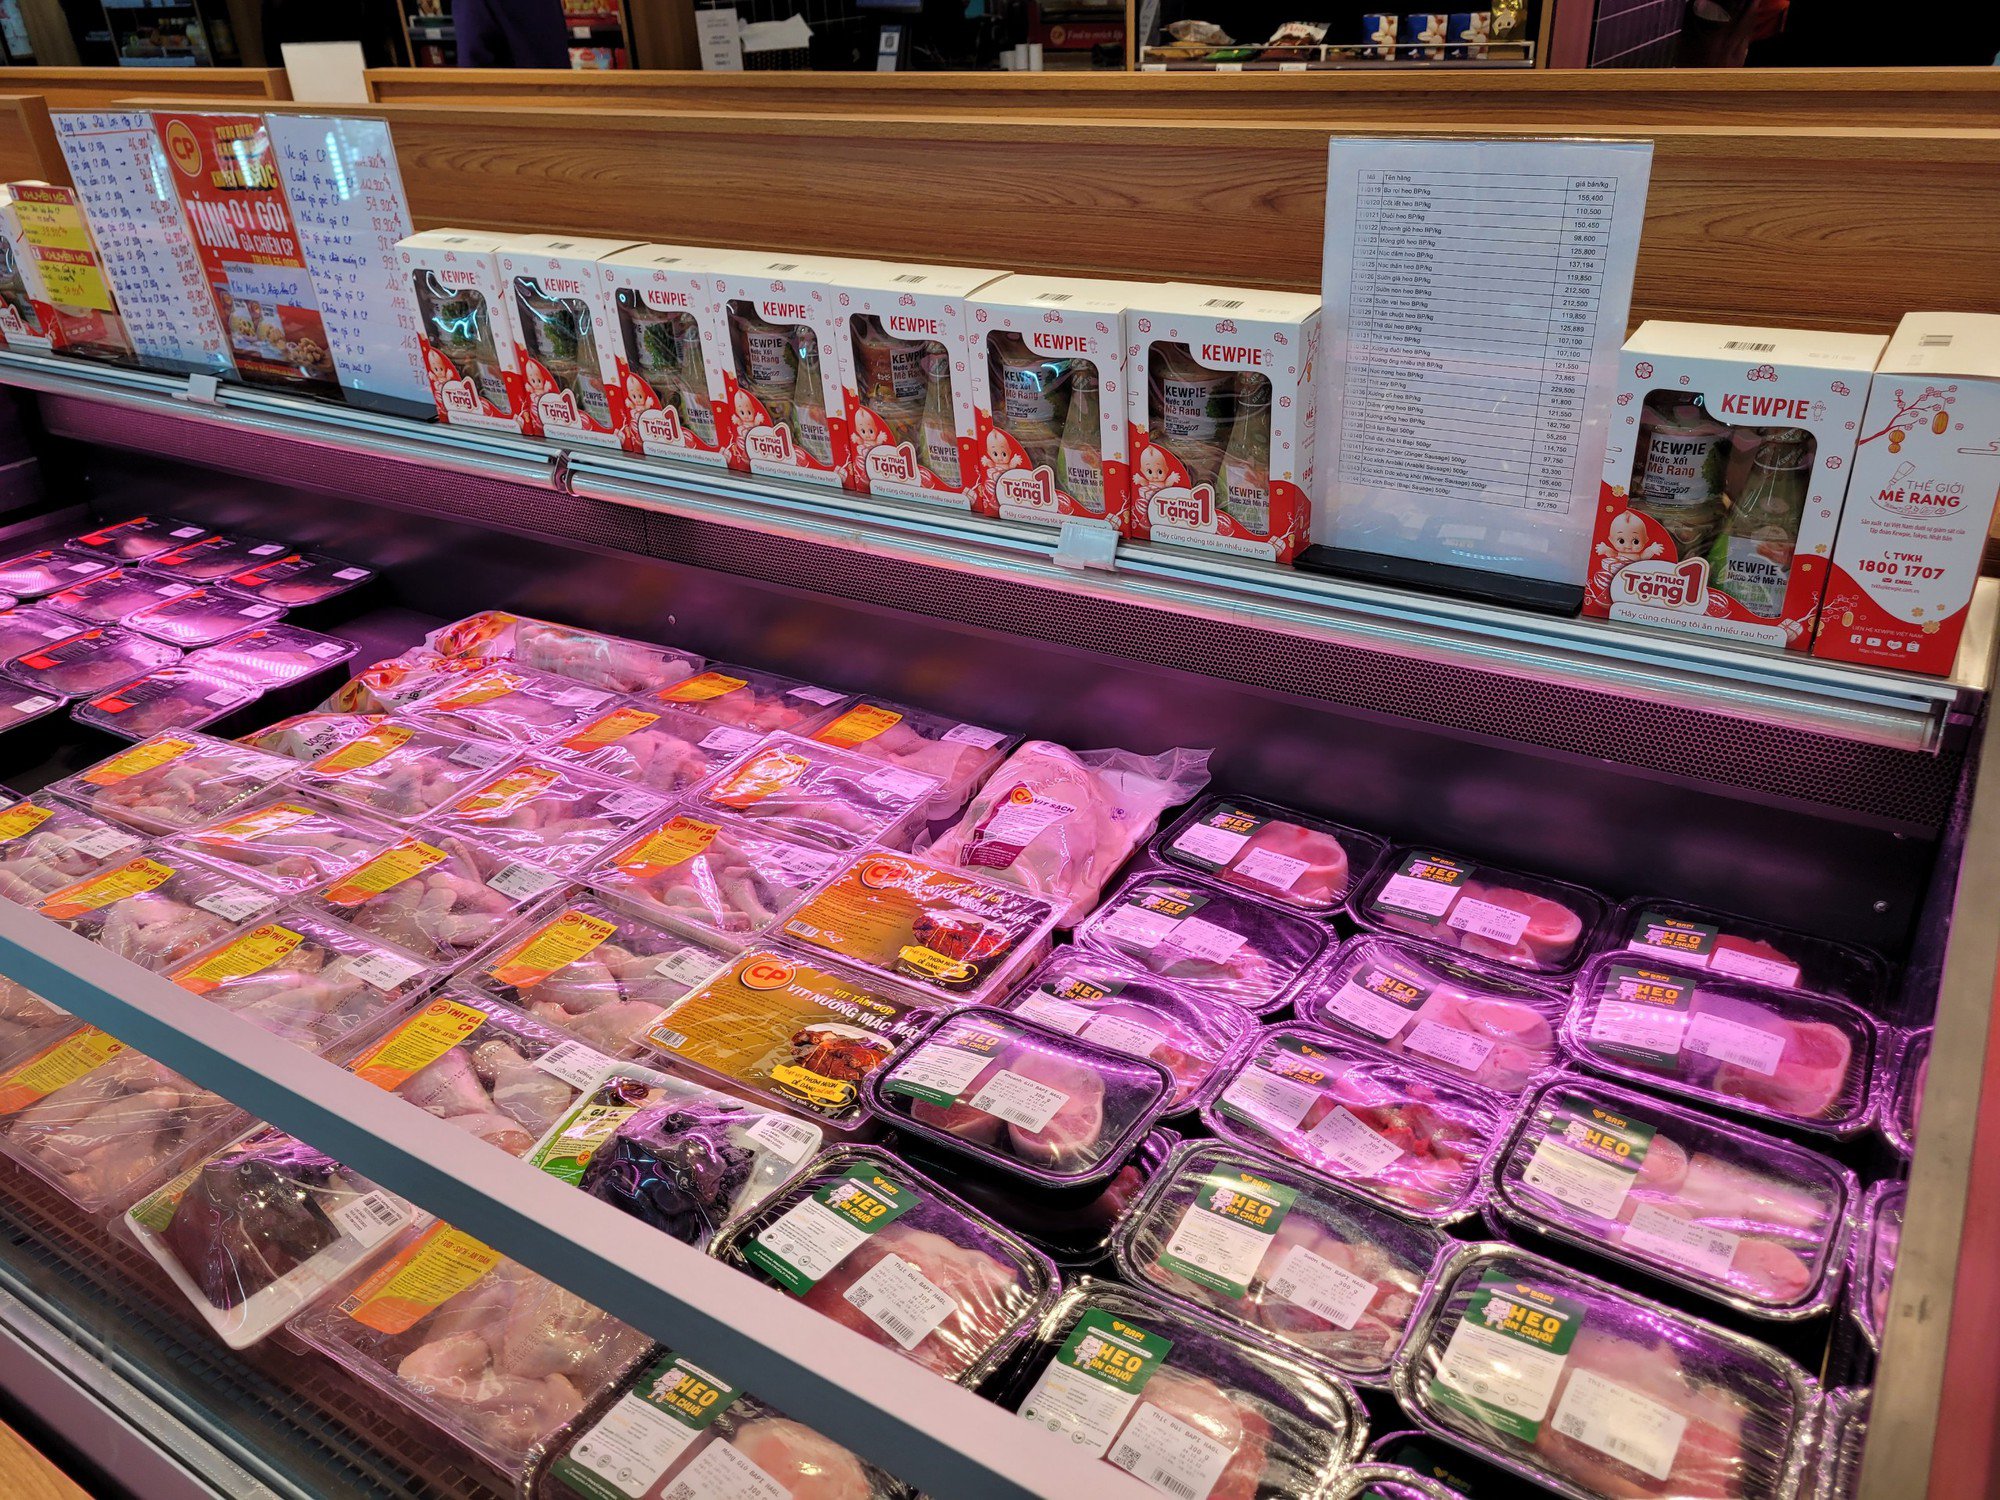 Giá thịt lợn thành phẩm ở siêu thị cao hơn chợ dân sinh hơn 50%: Cần 'kéo' sự chênh lệch này xuống để bảo vệ quyền lợi người tiêu dùng - Ảnh 2.